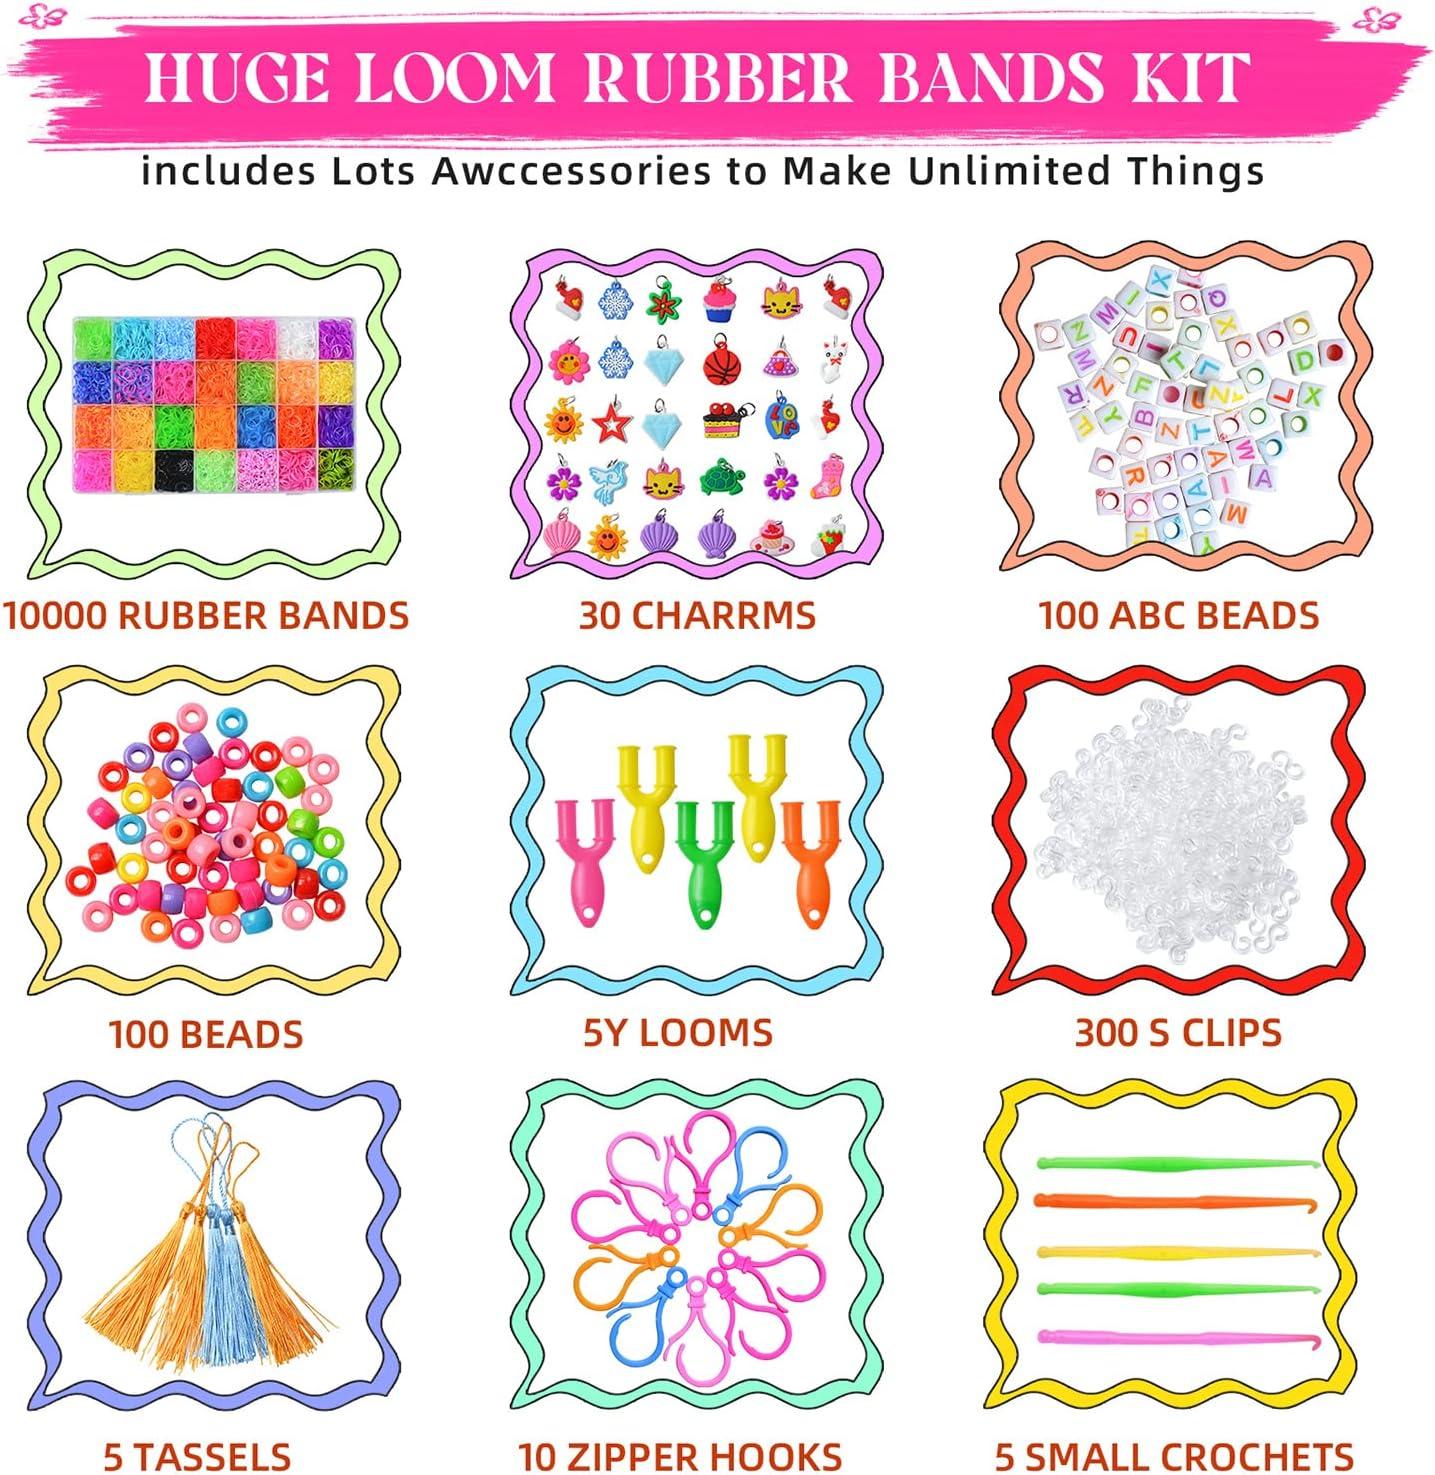 11000+Rubber Band Bracelet Kit, Loom Bracelet Making Kit for Kids